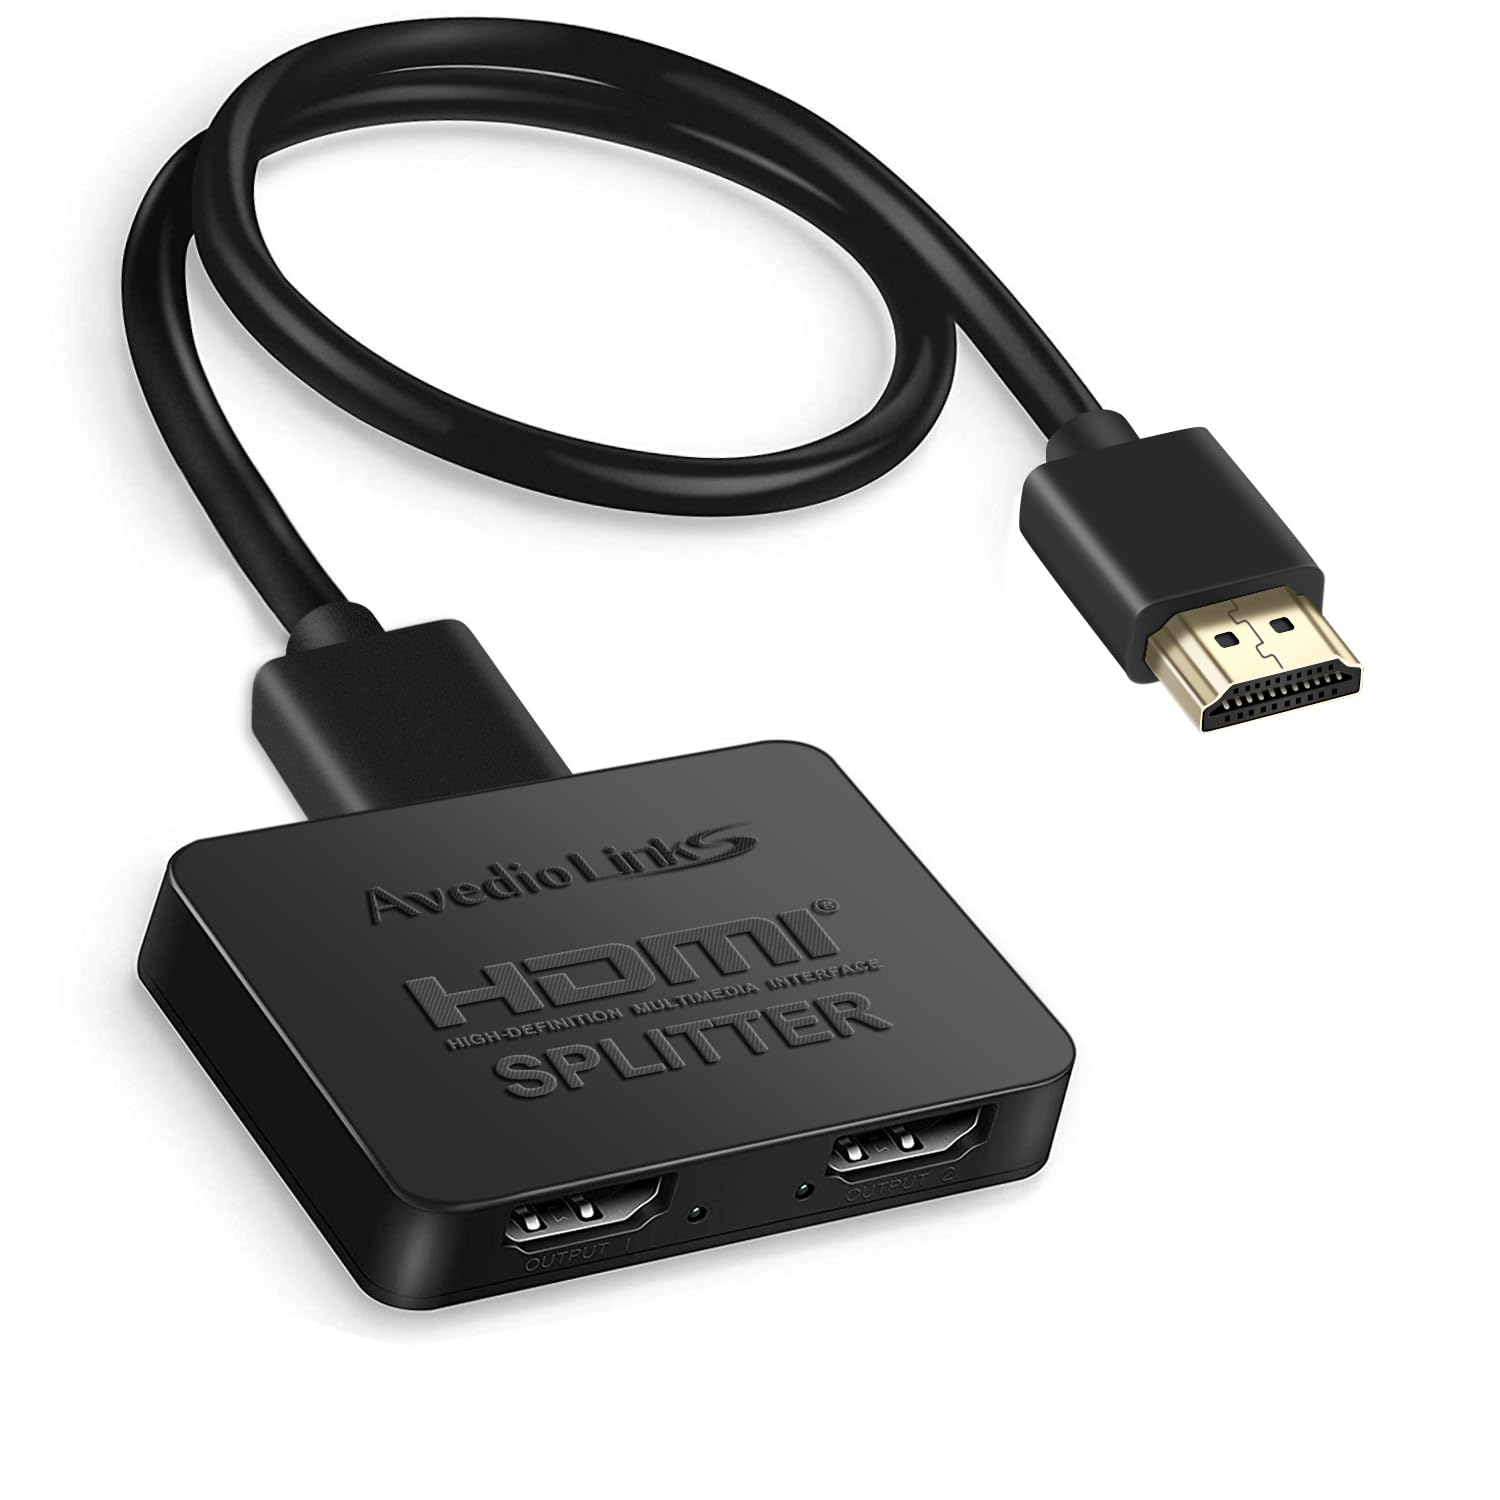 商品情報商品の説明主な仕様 【? HDMI 分配器 同時出力】avedio links HDMI スプリッター 1入力2出力は、2つの画面で同じ出力を複製するように設計されています-【複製するだけで、2つの異なる出力は提供されません】4K HDMI 分配器は、1つのHDMIソース（コンピューターなど）を2つの出力に接続できます （そのような：テレビ、プロジェクター、モニター）、そして両方の出力は同じページを表示します。あなたはビデオとオーディオを同時に、損失なしで、遅れなしで得るでしょう。br【? 4K HDMI 分配器＆高速USBケーブル付き】: 1入力2出力HDMI 分配器は、最大4K 30HZ、2k @ 60hz、1080p @ 120hz、3D、1080Pの解像度をサポートします。HDMI入力、出力が4K、HDMIケーブルが高品質の場合、両方のモニターがすべて4Kで動作します。 両方のモニターが同期していて、色の深さがまったく変わらないため、遅れはありません。豪華なビデオとオーディオを友人や家族と共有できます。HDMI出力ケーブルを使用してください。【複製するだけで、2つの異なる出力は提供されません】br【? 幅広い互換性】: HDMI スプリッターは1つの入力をサポートします：Sky Box、Fire Stick、Computer、XBox 360、XBox、PS3/PS4/PS4 Pro/PS5、Fire TV Stick、Blu-RayDVDプレーヤーなどに適用。同時に2つの同じ出力をサポートします：TV、プロジェクト、モニターなどに適用【注意：このHDMI 分配器 1X2は、サウンドバー、アンプ、ヘッドフォン、またはhdmiポートを備えたその他のオーディオデバイスの接続をサポートしていません。HDMIオーディオスプリッターではありません。】br【? プラグアンドプレイ＆ポータブル】: HDMI SPLITTERデバイスとUSB充電ケーブルを接続するだけでお楽しみいただけます。サイズ：2.5x2.1x0.5インチ/ 6.3X5.3X1.2 cm、HDMIスプリッター1入力2出力は使いやすく、持ち運びが簡単で、旅行に便利です。 小さなスプリッターボックスを接続すると、リビングルームとキッチンの間で2つの同じディスプレイを共有できます。学校、ソーシャルクラブ、家族で非常に便利です。外部ドライバーが不要で、安全で環境に優しいです。br【? 1年間の保証】: パッケージの内容：1 * HDMIスプリッター+ 1 * 高速HDMIケーブル+ 1 *USB電源ケーブル+ 1 *取扱説明書。 HDMIスプリッター1入力2出力で1年間のマネーバックゼロリスク購入を保証します。ご不明な点がございましたら、またはQA経由でお問い合わせください。 私たちはあなたのために問題を解決するために最善を尽くします。